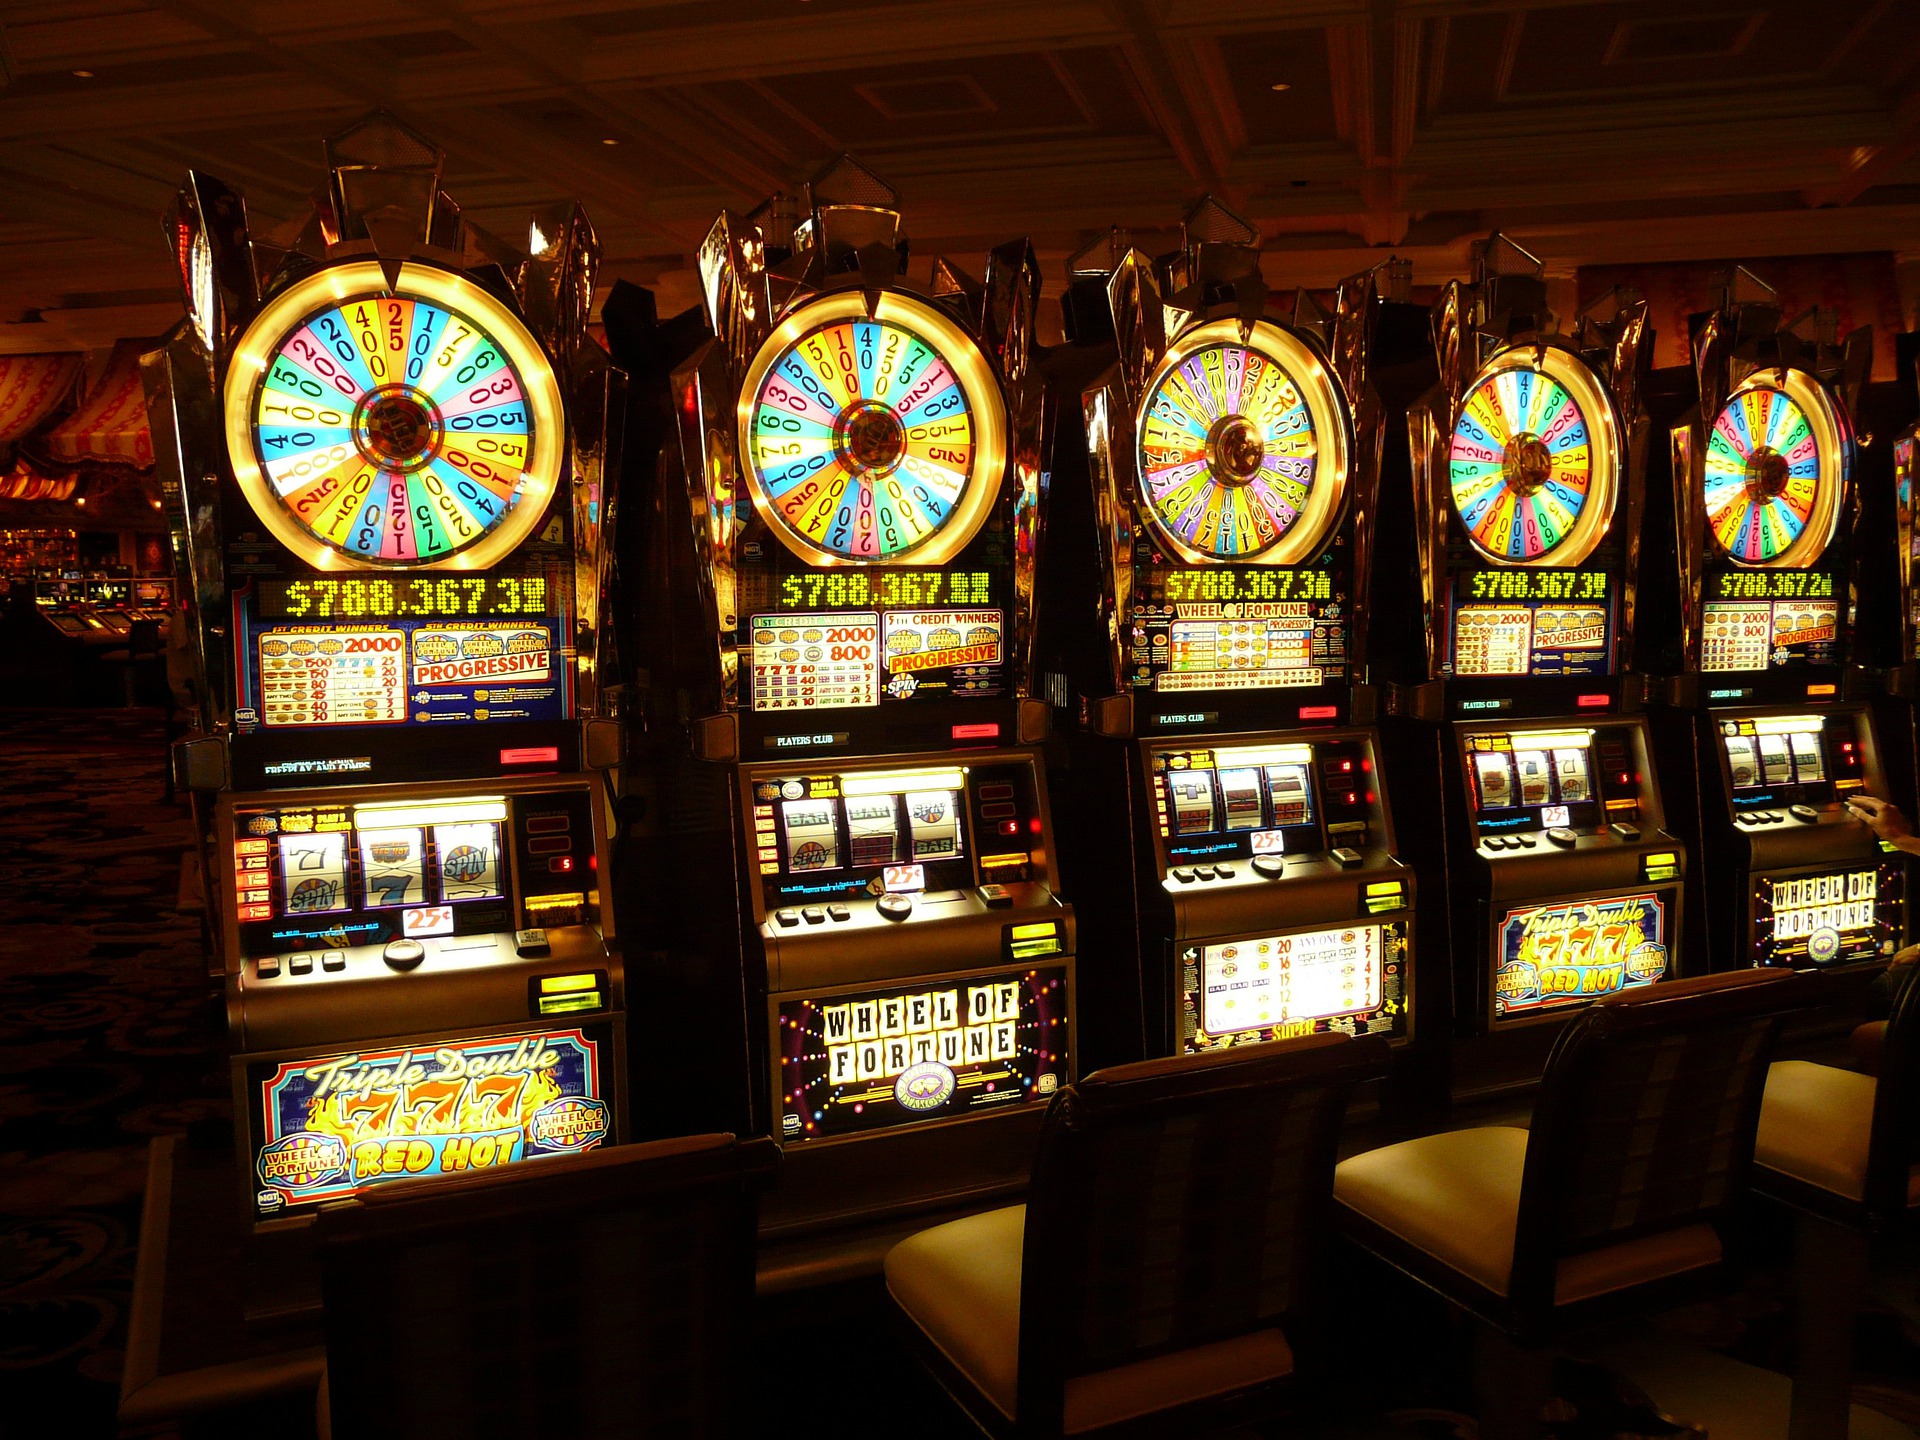 online slot machines